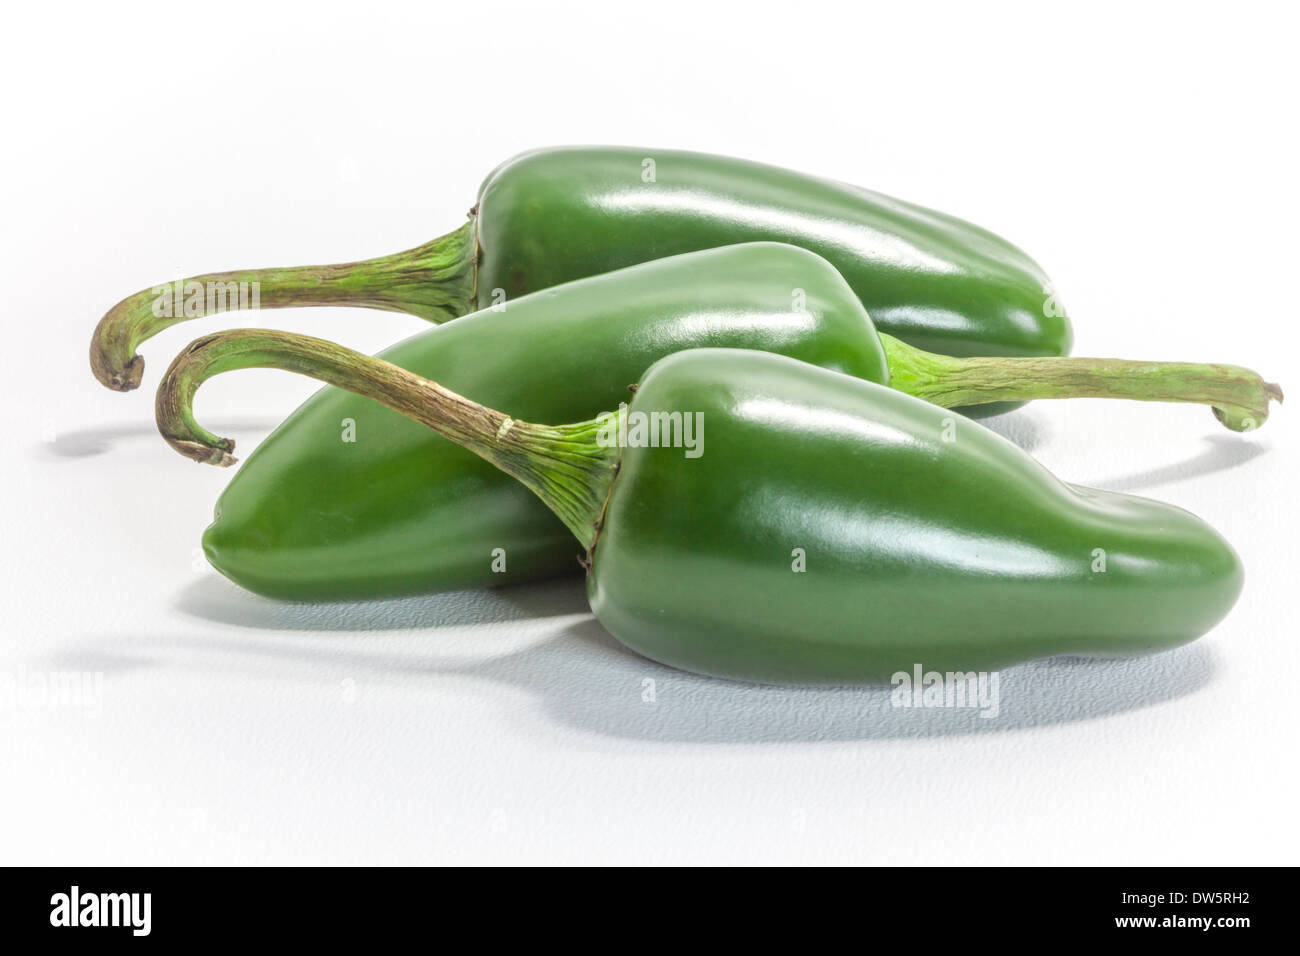 Drei grüne Hot jalapeno Chilis, die C. annuum Sorte von Capsicum Familie. Benannt nach der Stadt Jalapa in Santa Cruz, Mexiko Stockfoto